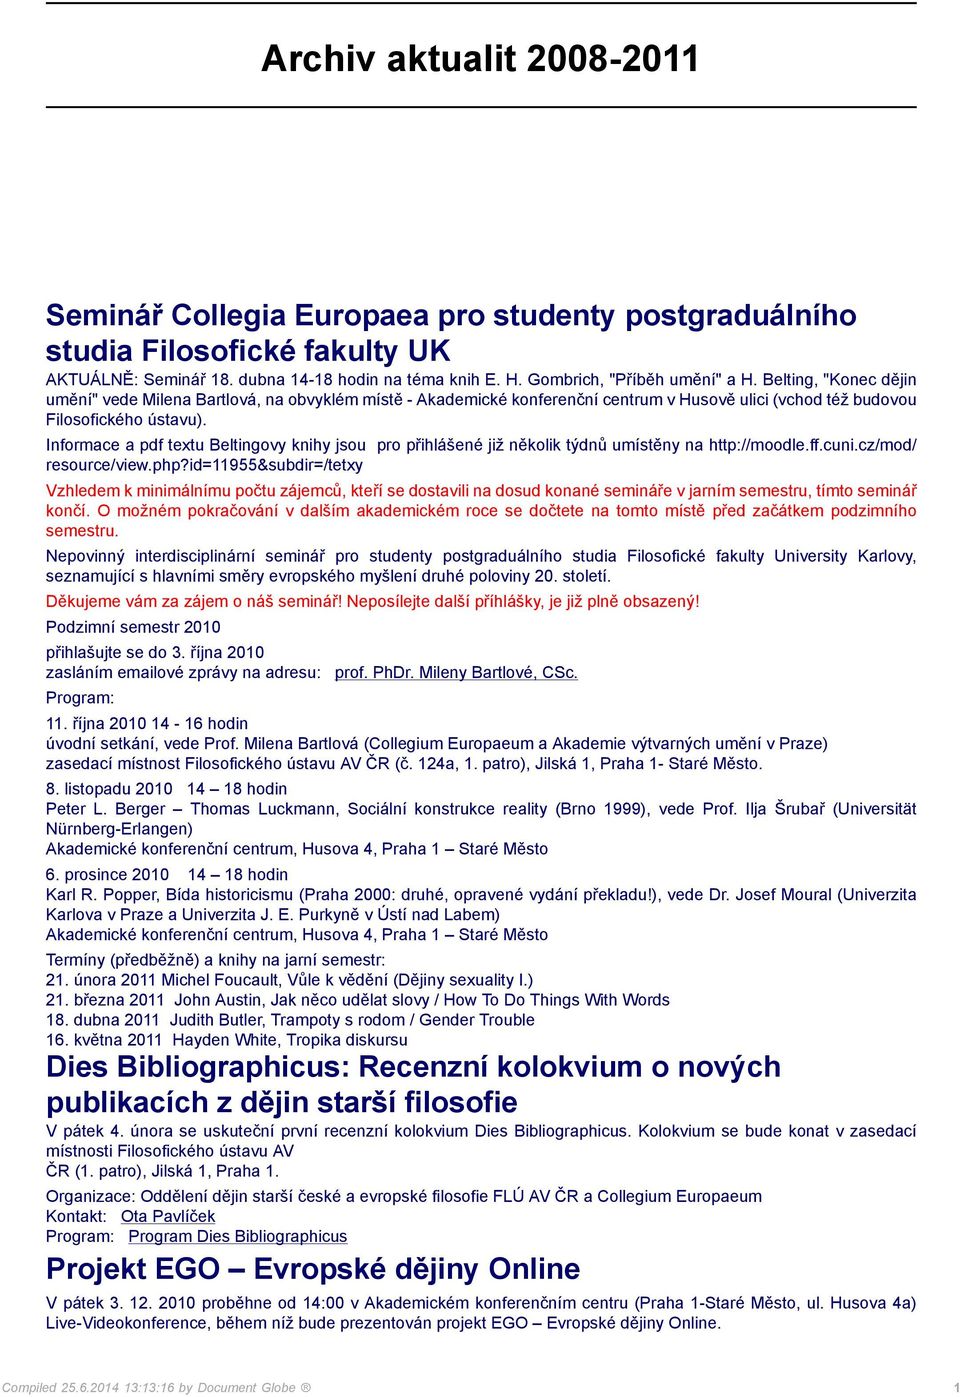 Informace a pdf textu Beltingovy knihy jsou pro přihlášené již několik týdnů umístěny na http://moodle.ff.cuni.cz/mod/ resource/view.php?